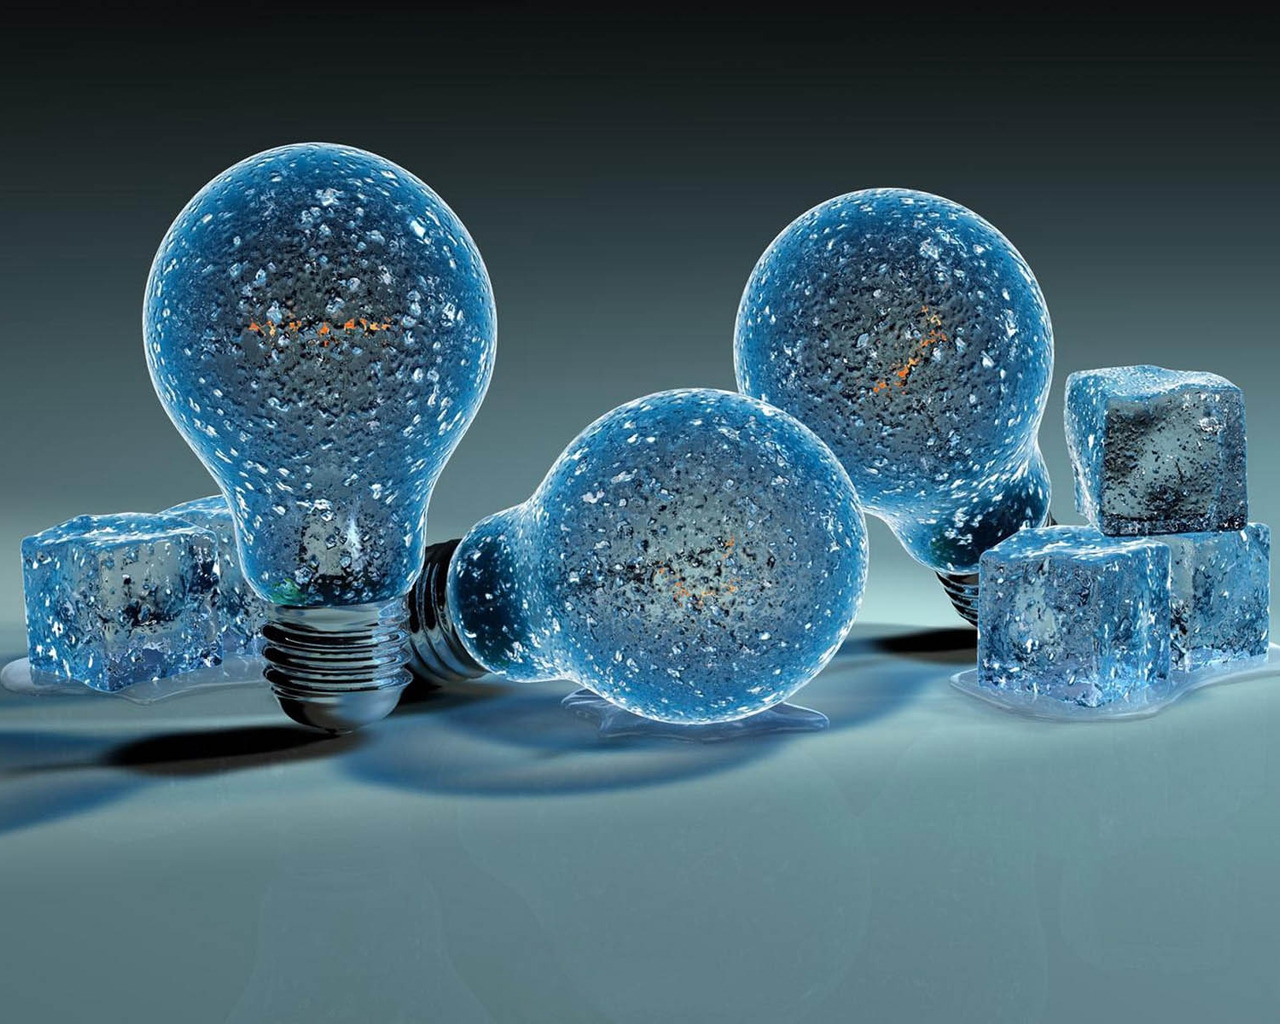 Iced Light Bulbs for 1280 x 1024 resolution